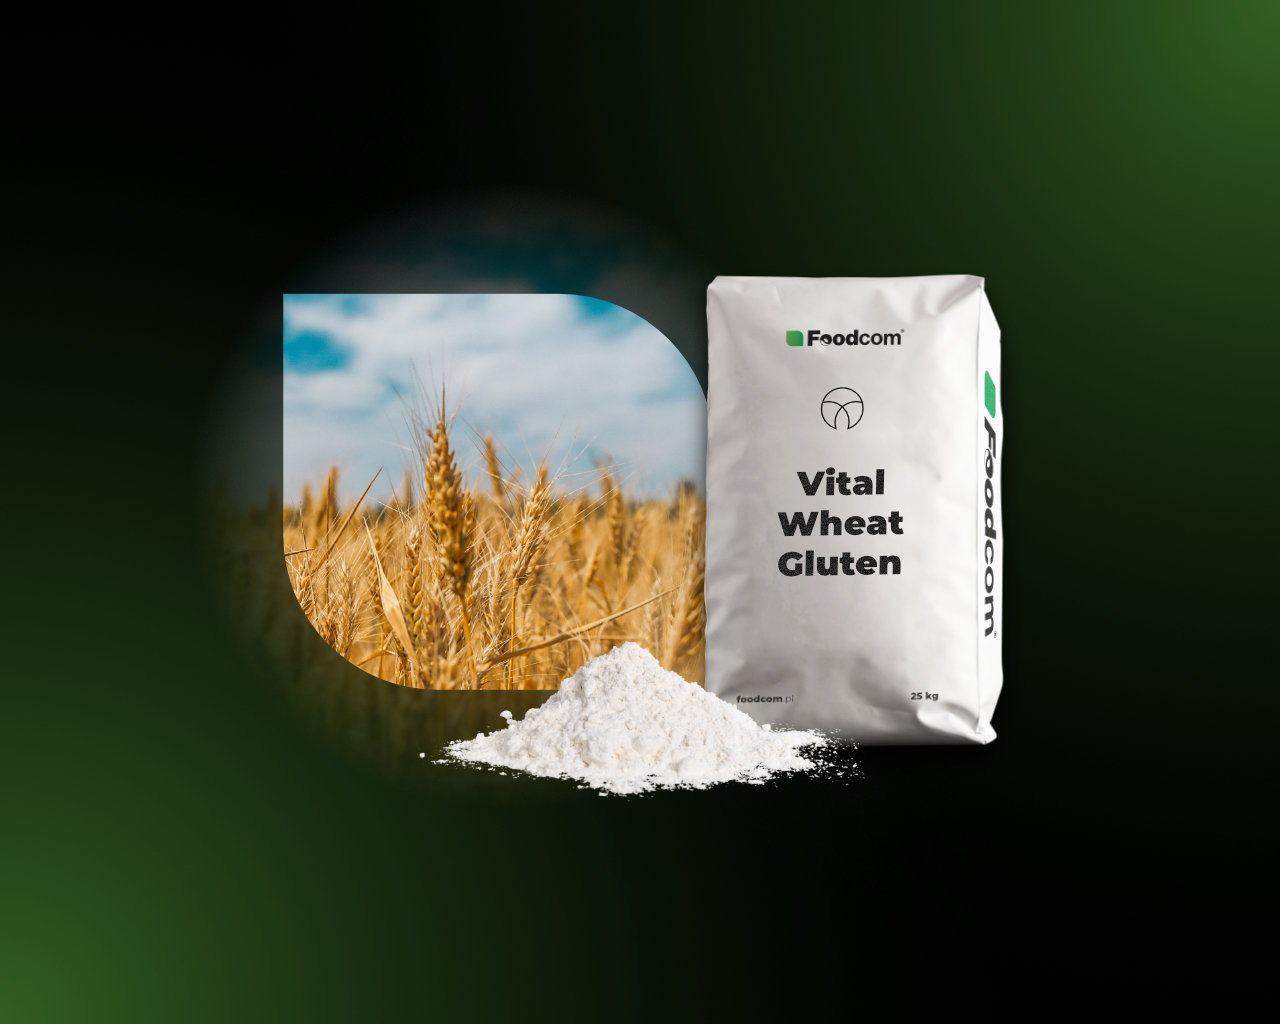 Le gluten de blé vital - propriétés et applications - Foodcom S.A.